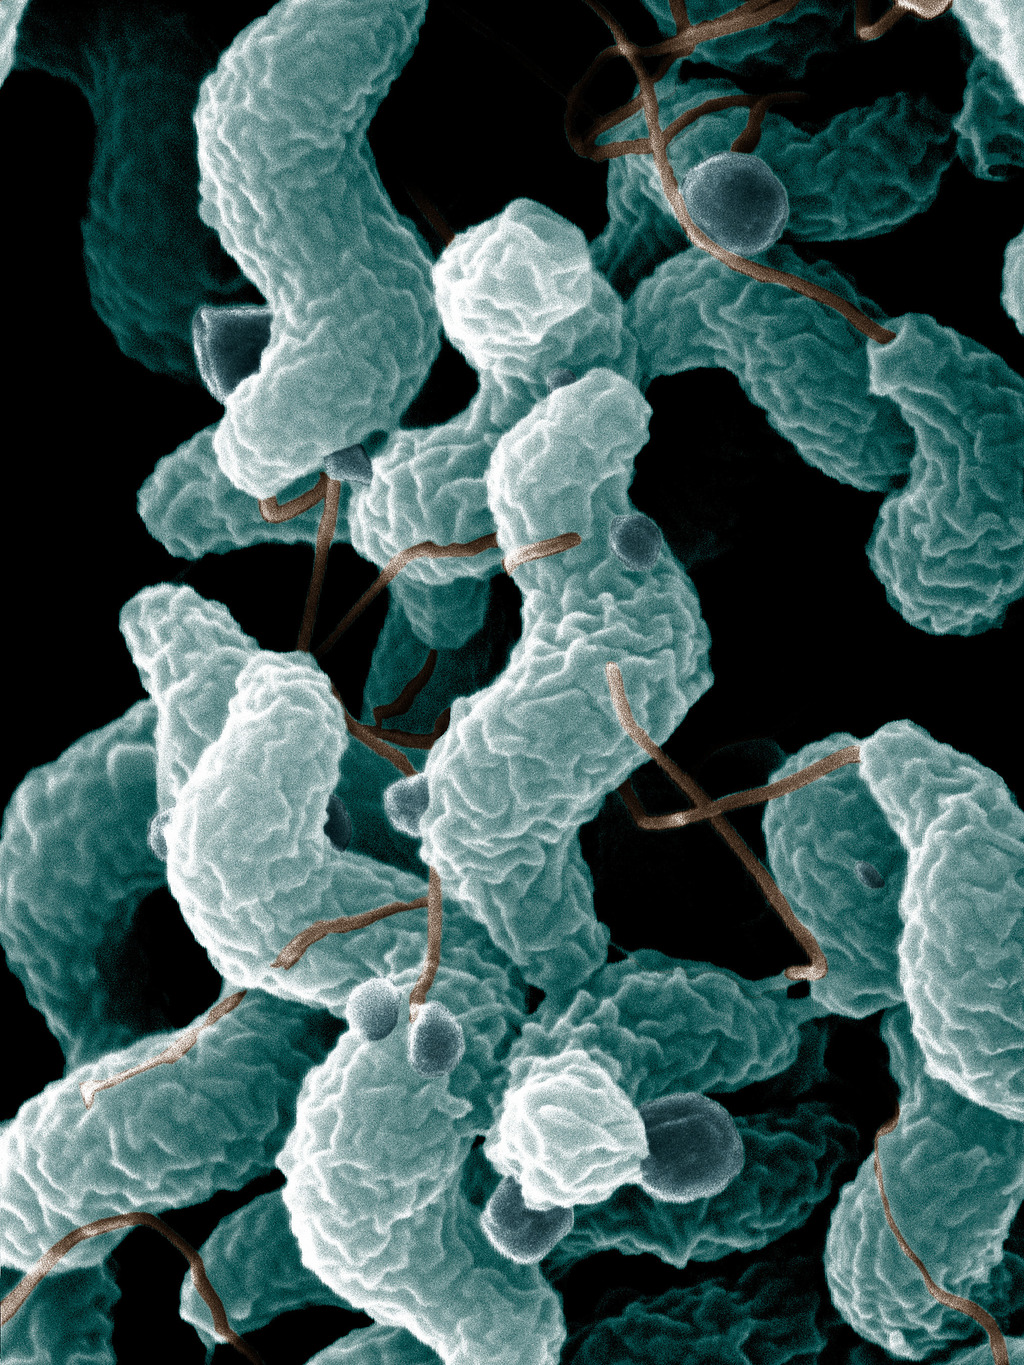 Epsilonproteobacteria